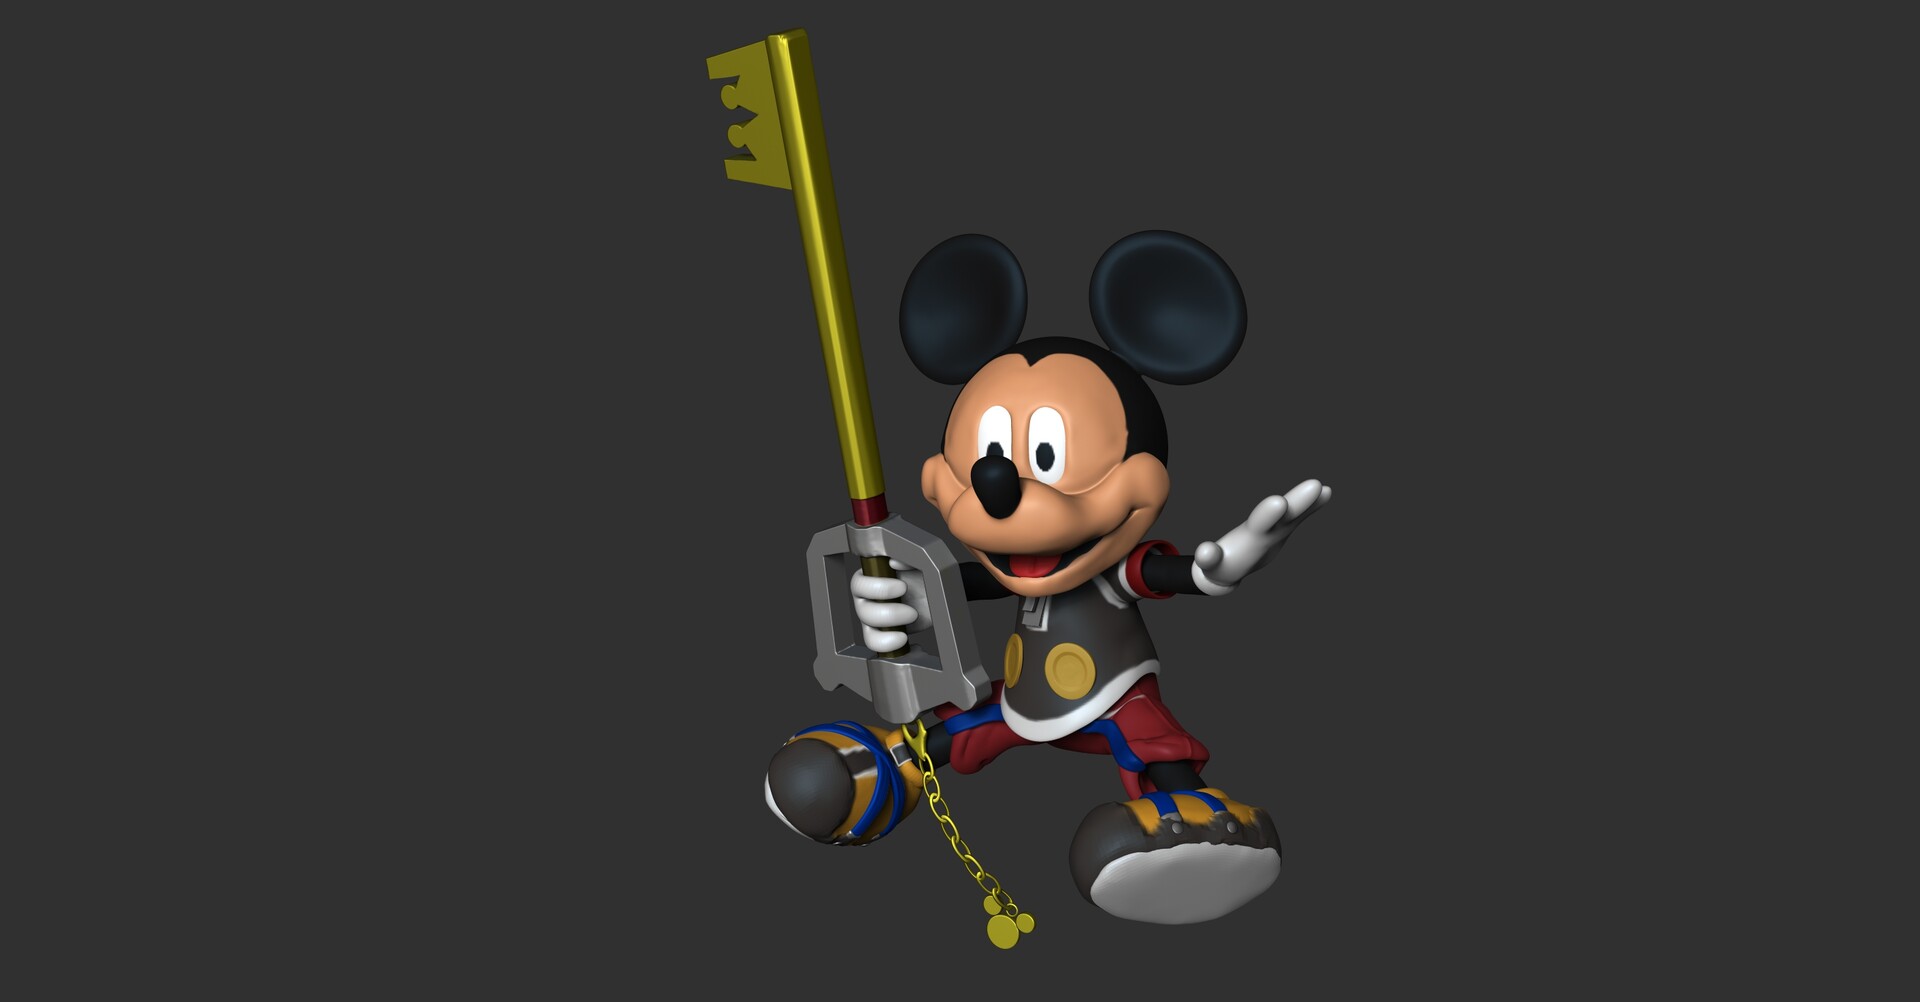 ArtStation - Kingdom Hearts King Mickey